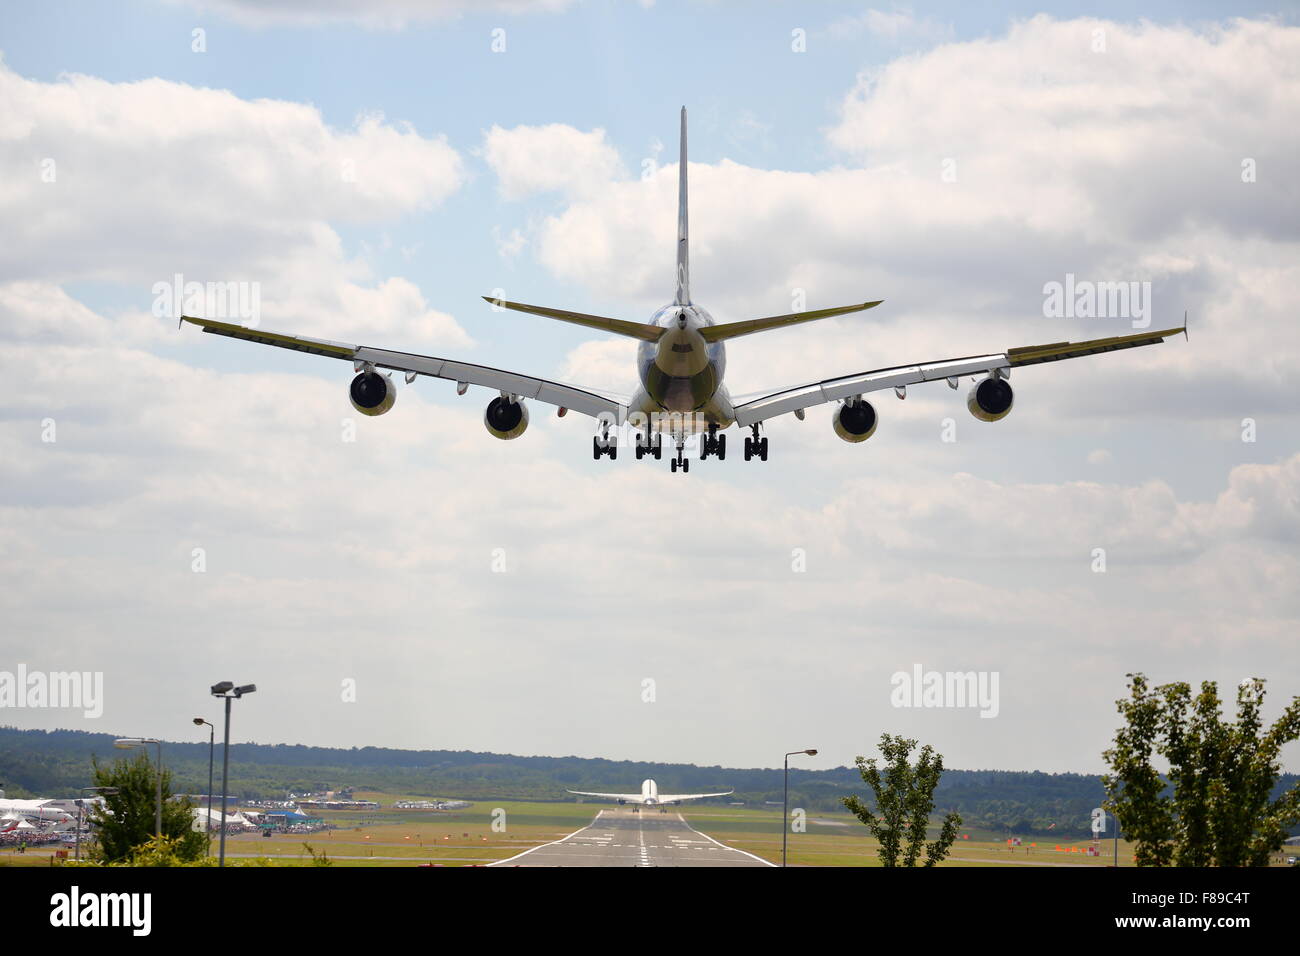 An Airbus A380 landing at Farnborough Air Show 2014 while an Airbus A350 takes off Stock Photo